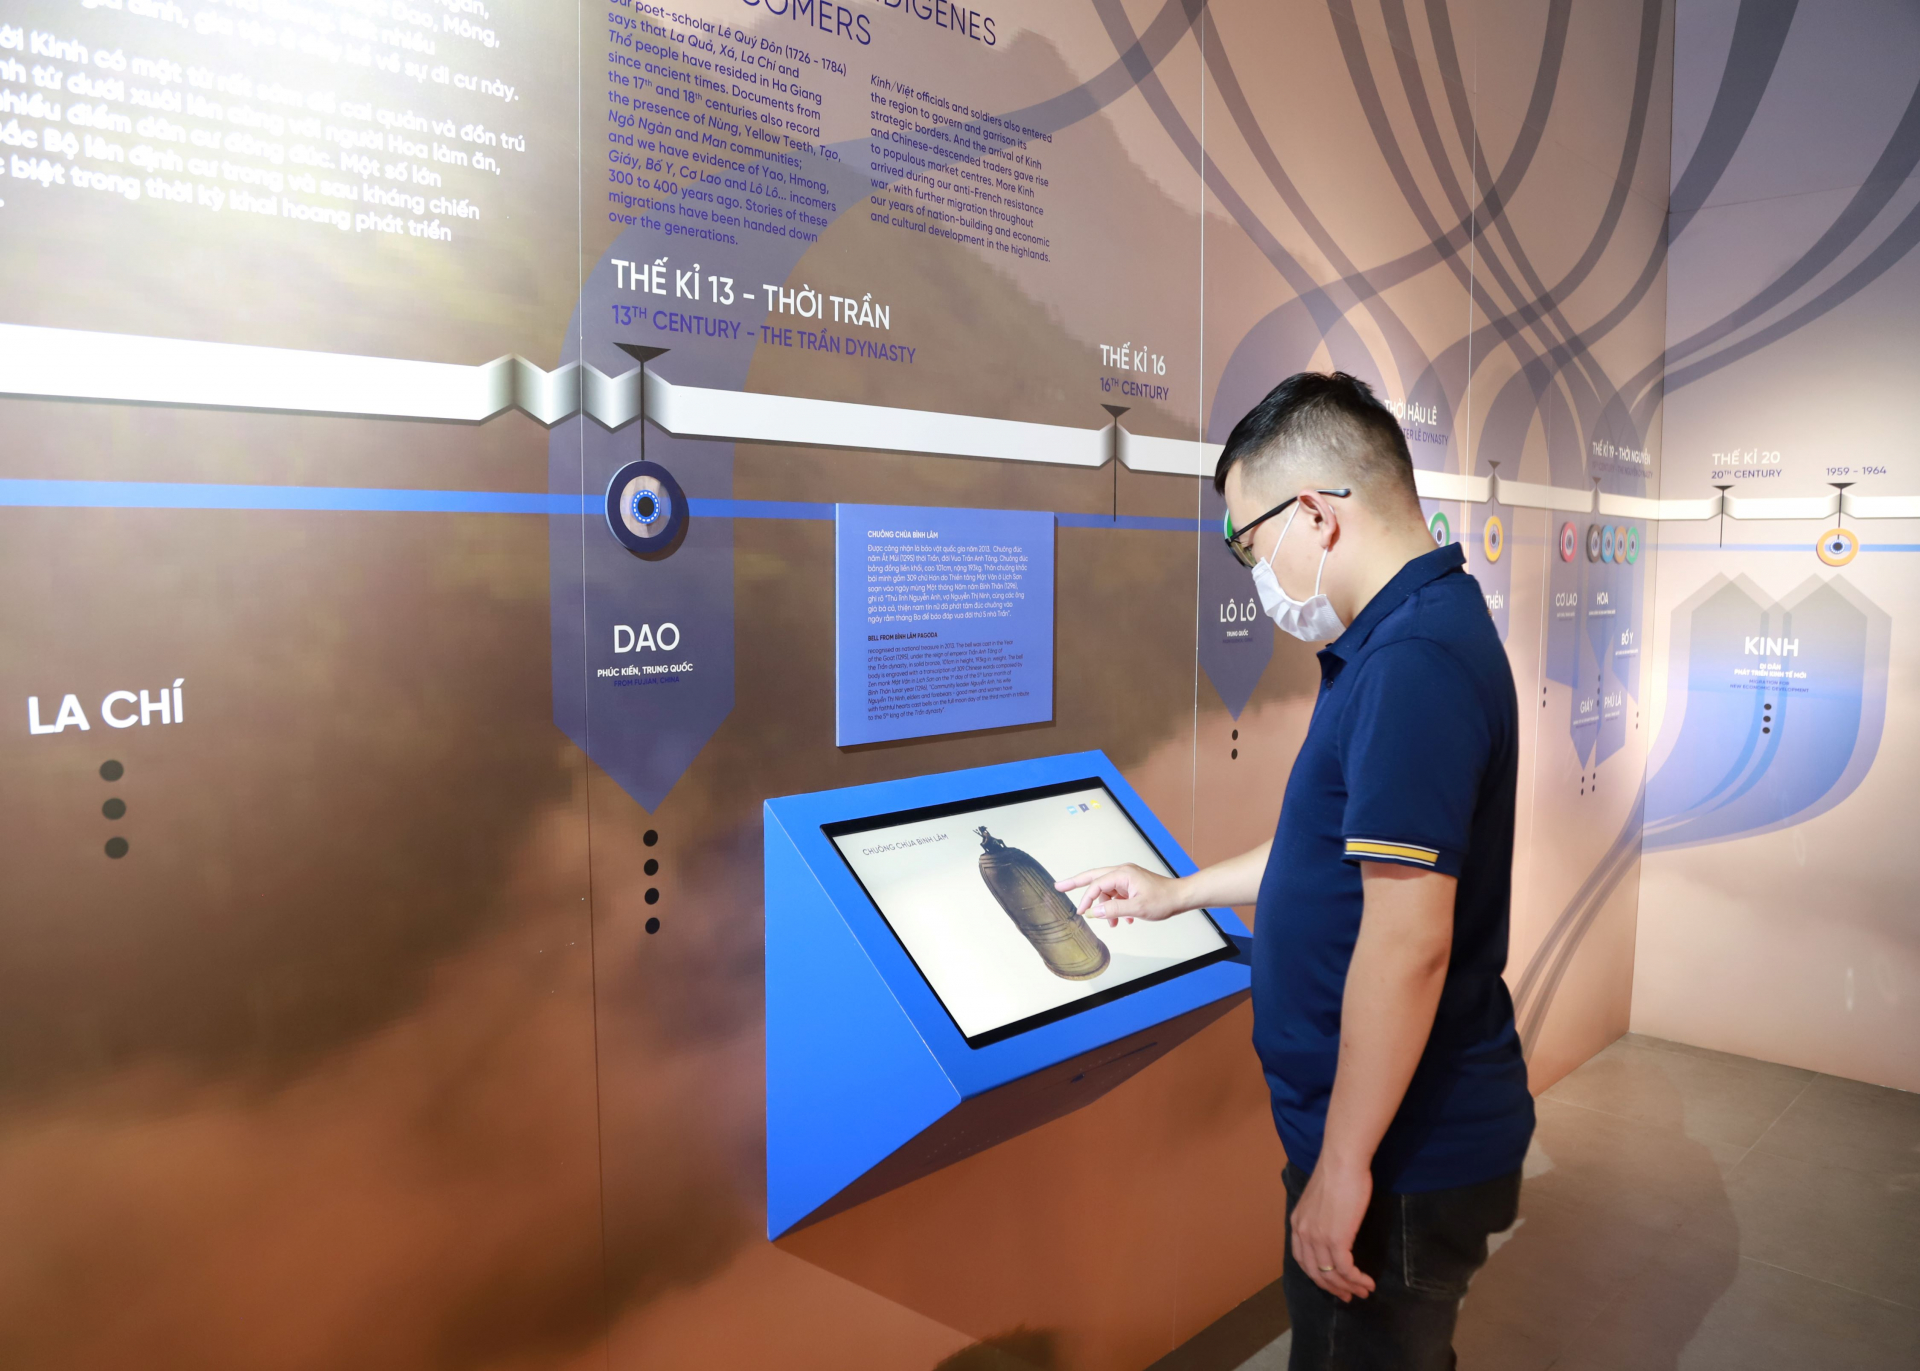 Không gian trưng bày tại Bảo tàng tỉnh được thiết kế lồng ghép công nghệ, màn hình tương tác đem đến trải nghiệm thú vị cho khách tham quan.